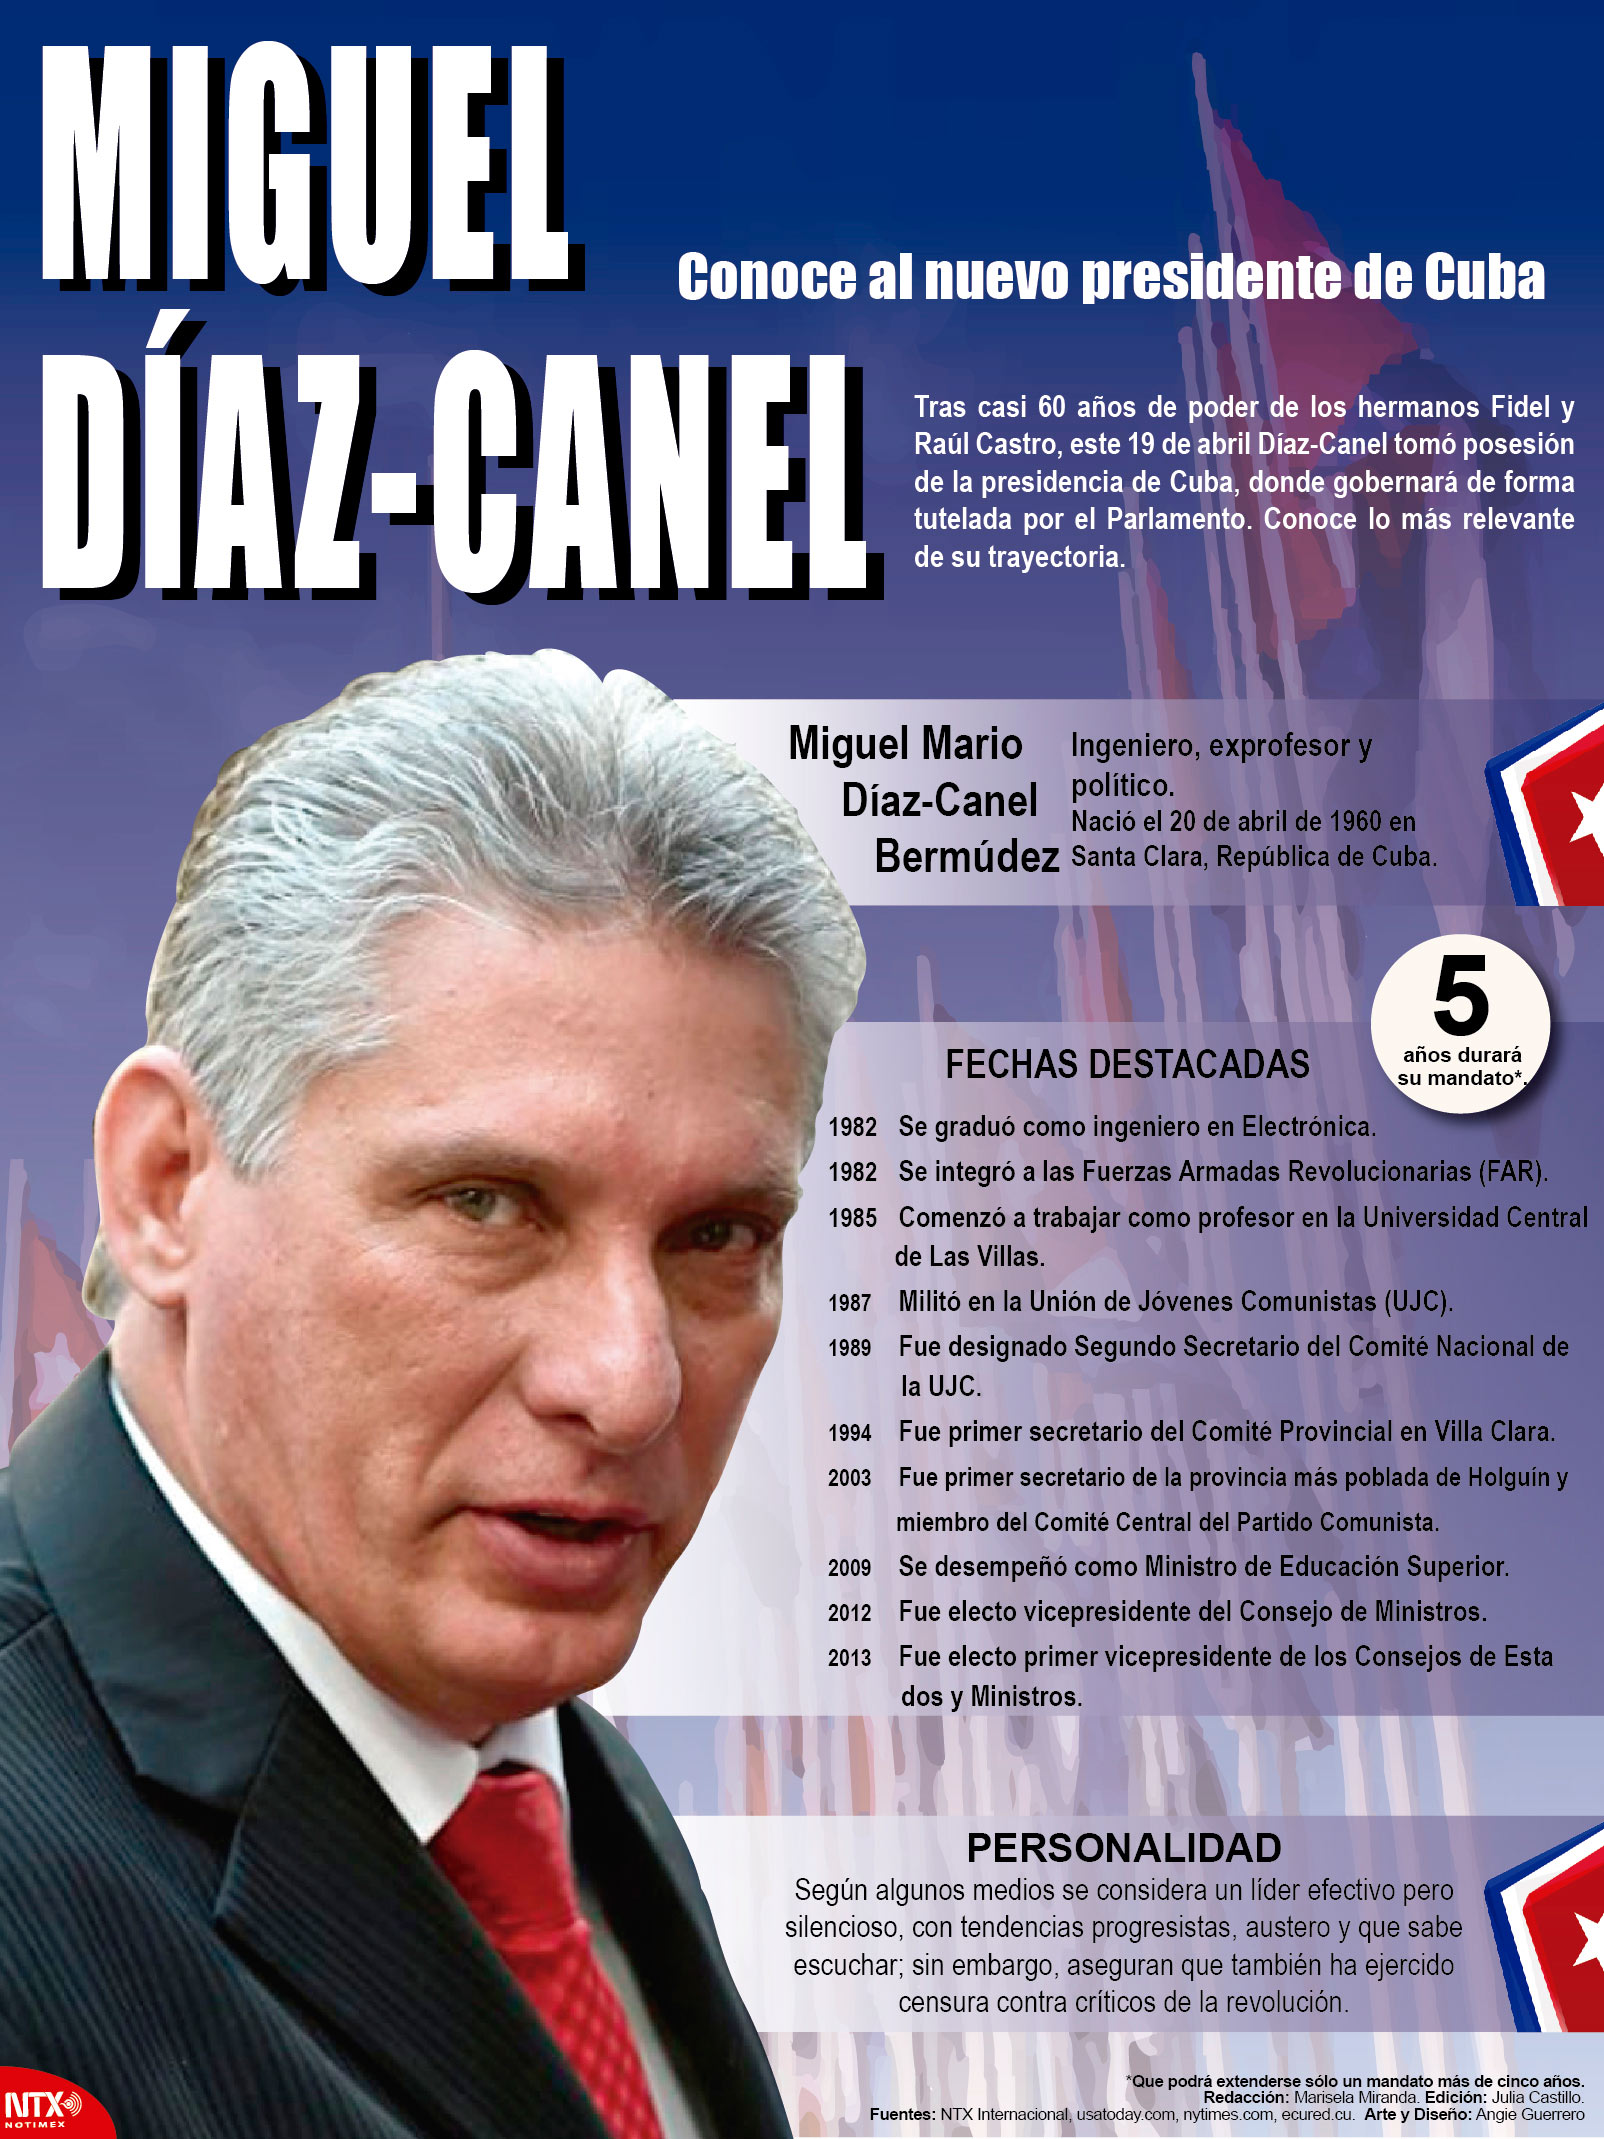 Miguel Daz-Canel